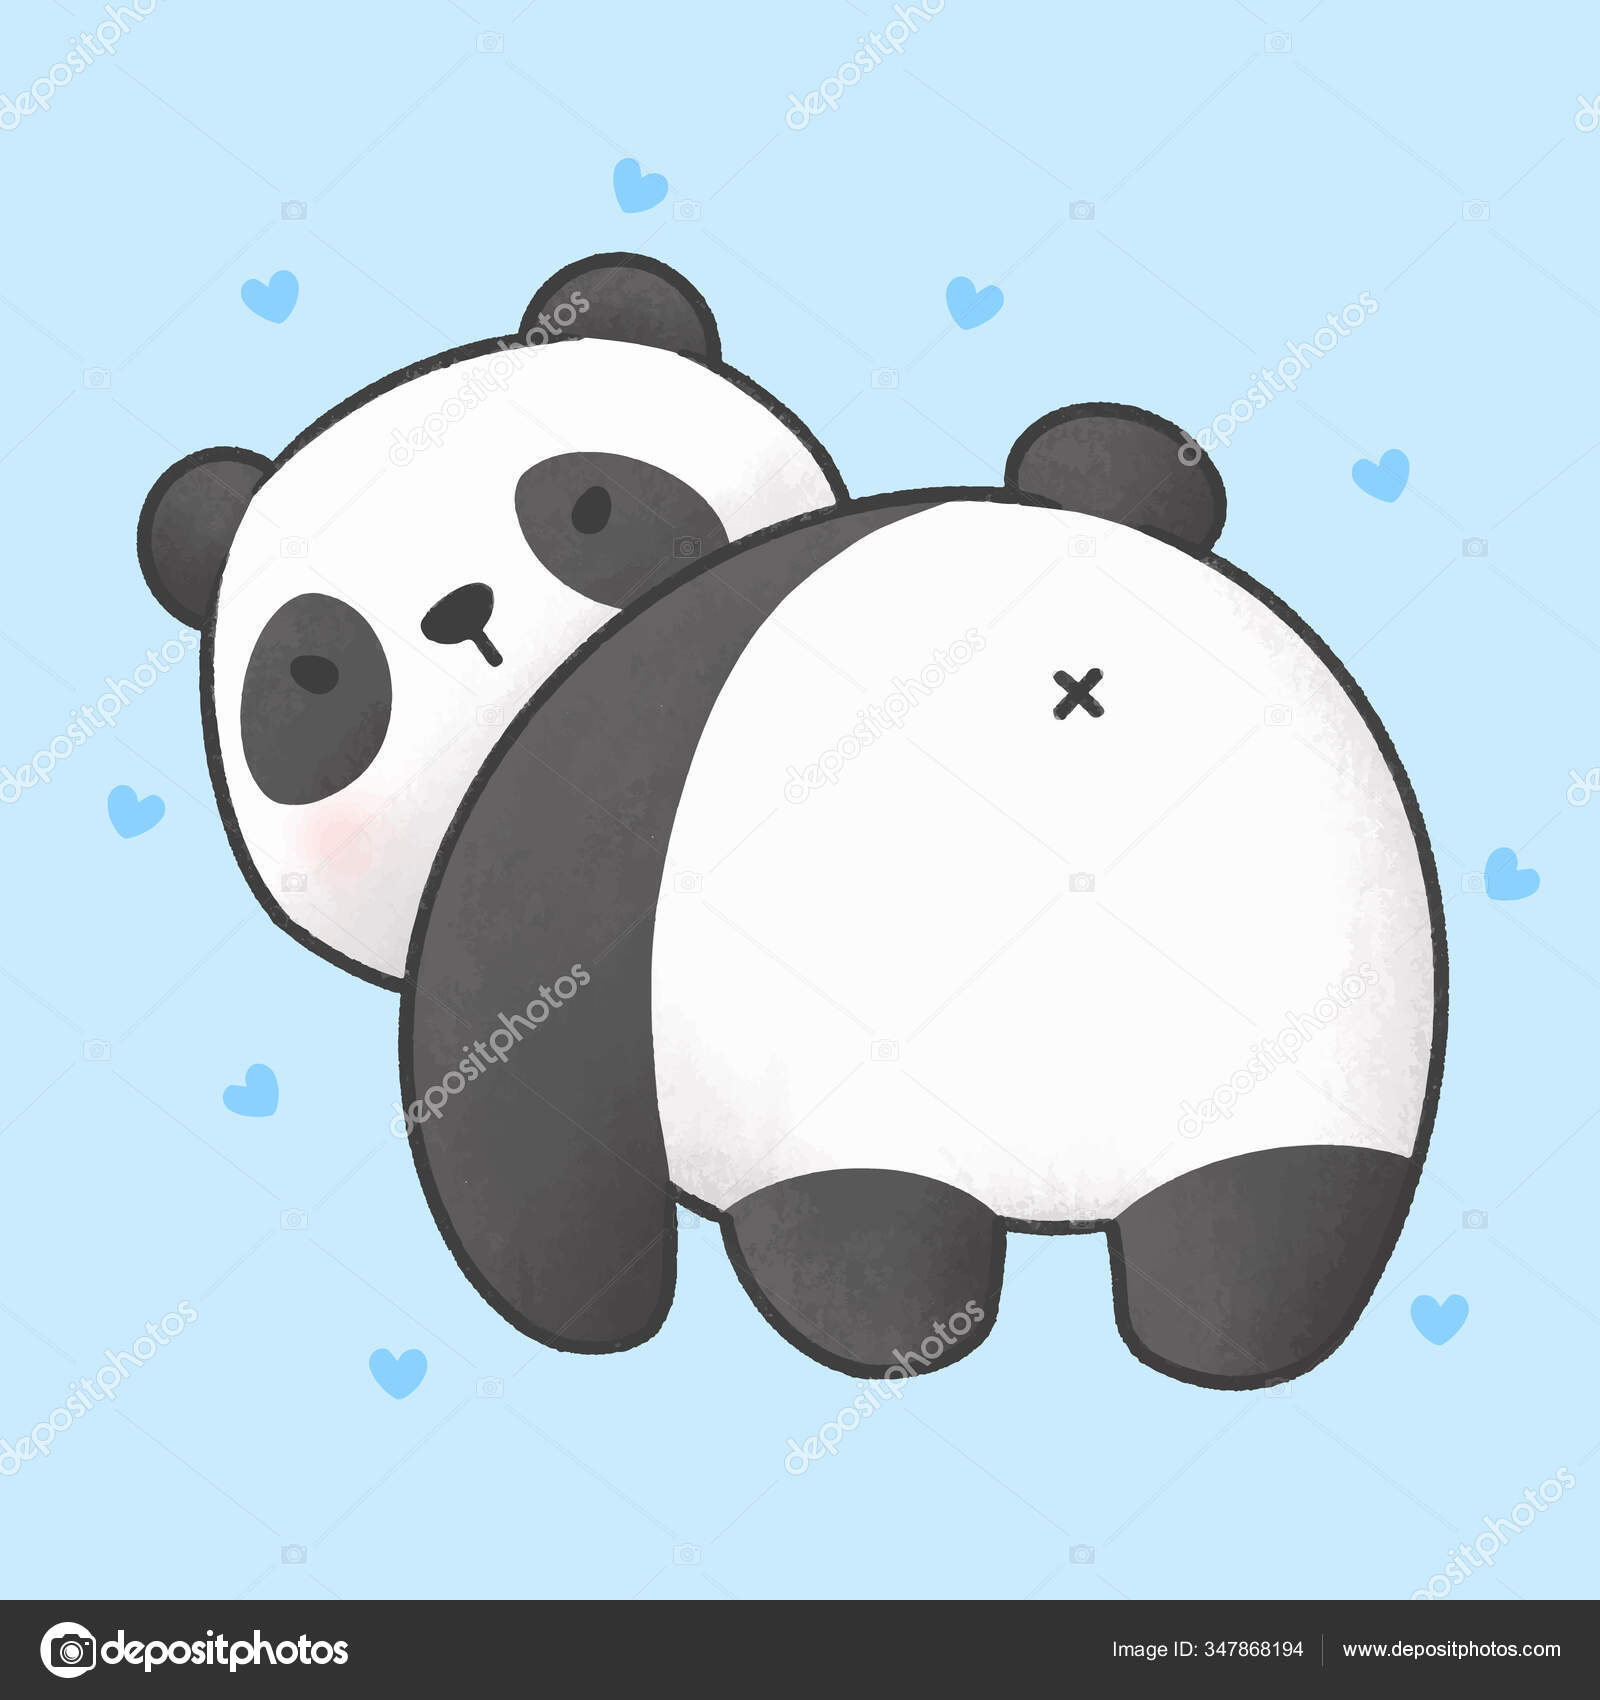 Desenho de urso panda fofo segurando coração de animal kawaii